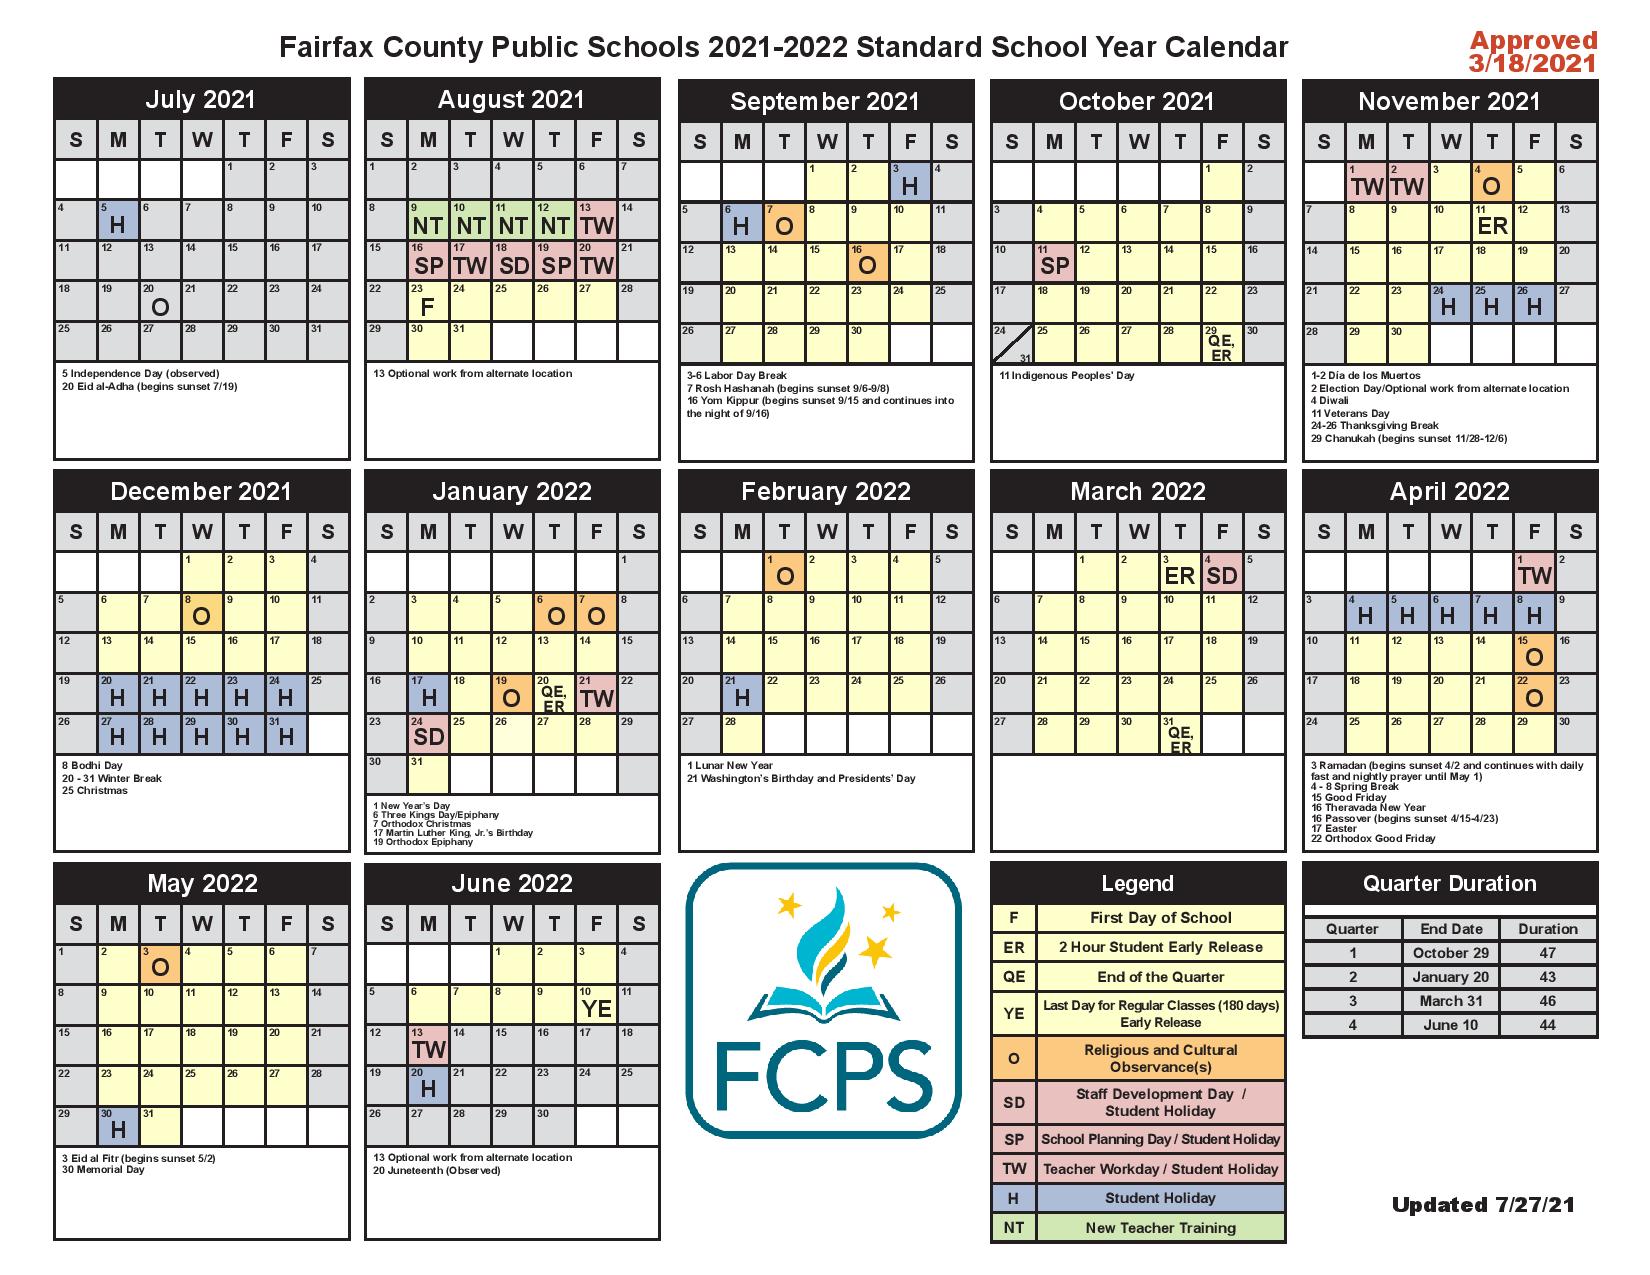 Fairfax County Calendar 2022 Fairfax County Public Schools Calendar 2021-2022 & Holidays